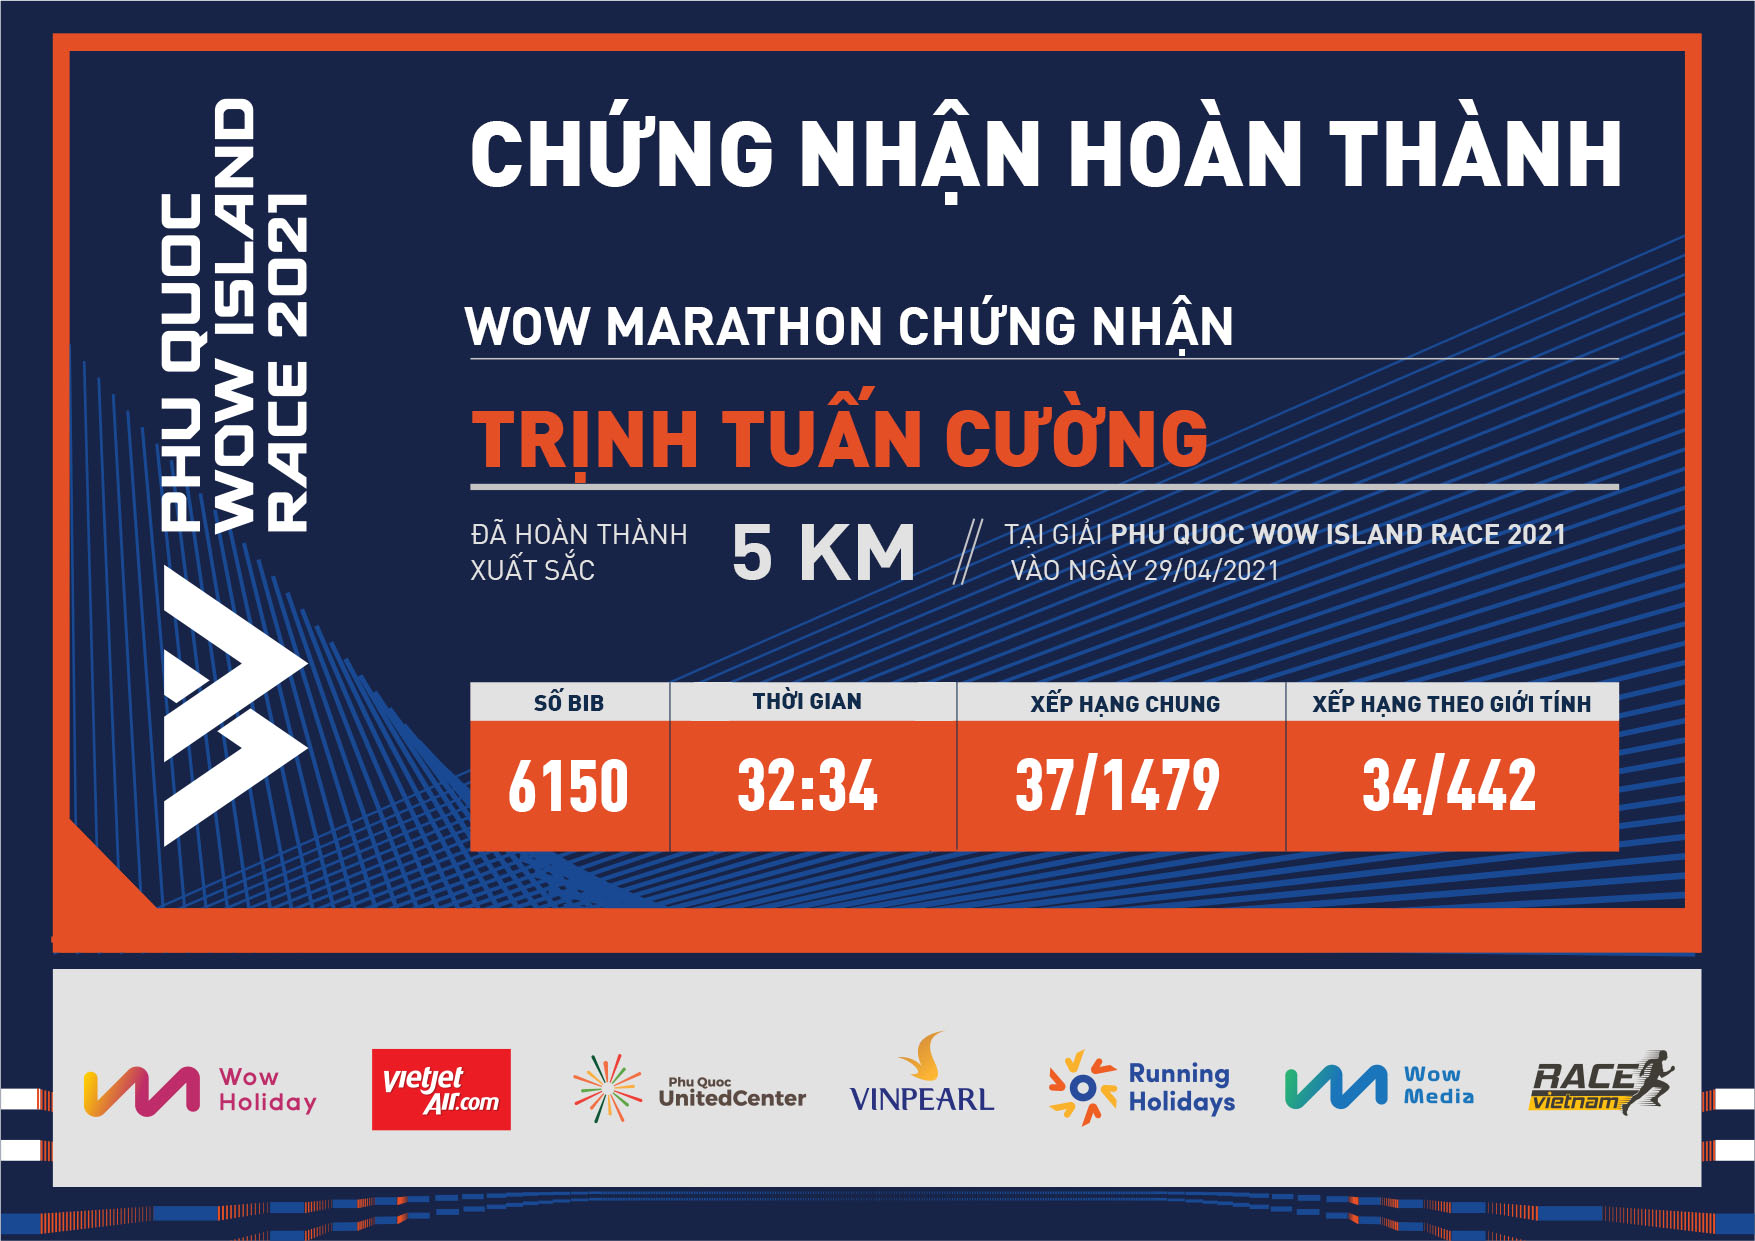 6150 - Trịnh Tuấn Cường